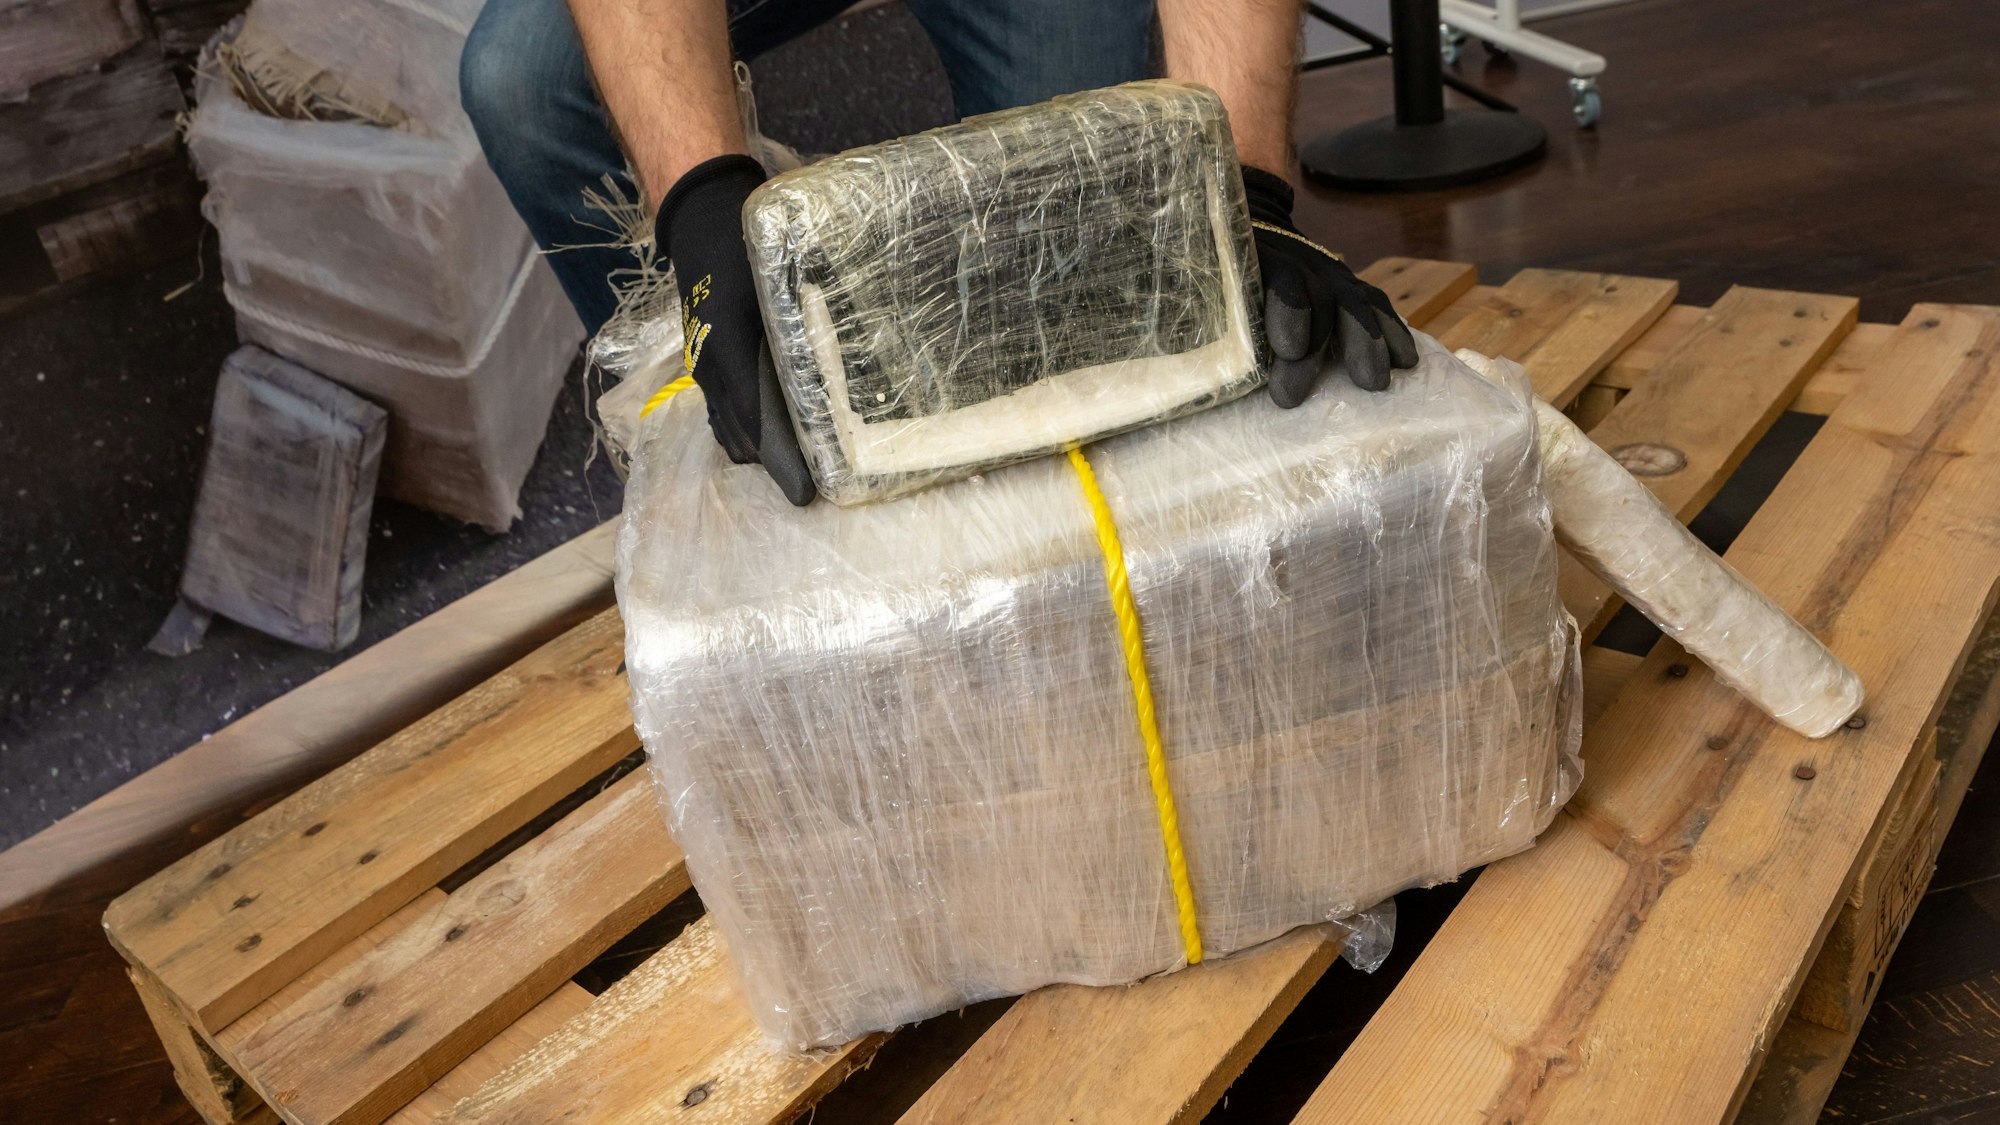 Ein Zollbeamter präsentiert sichergestelltes Kokain. (Archivbild)